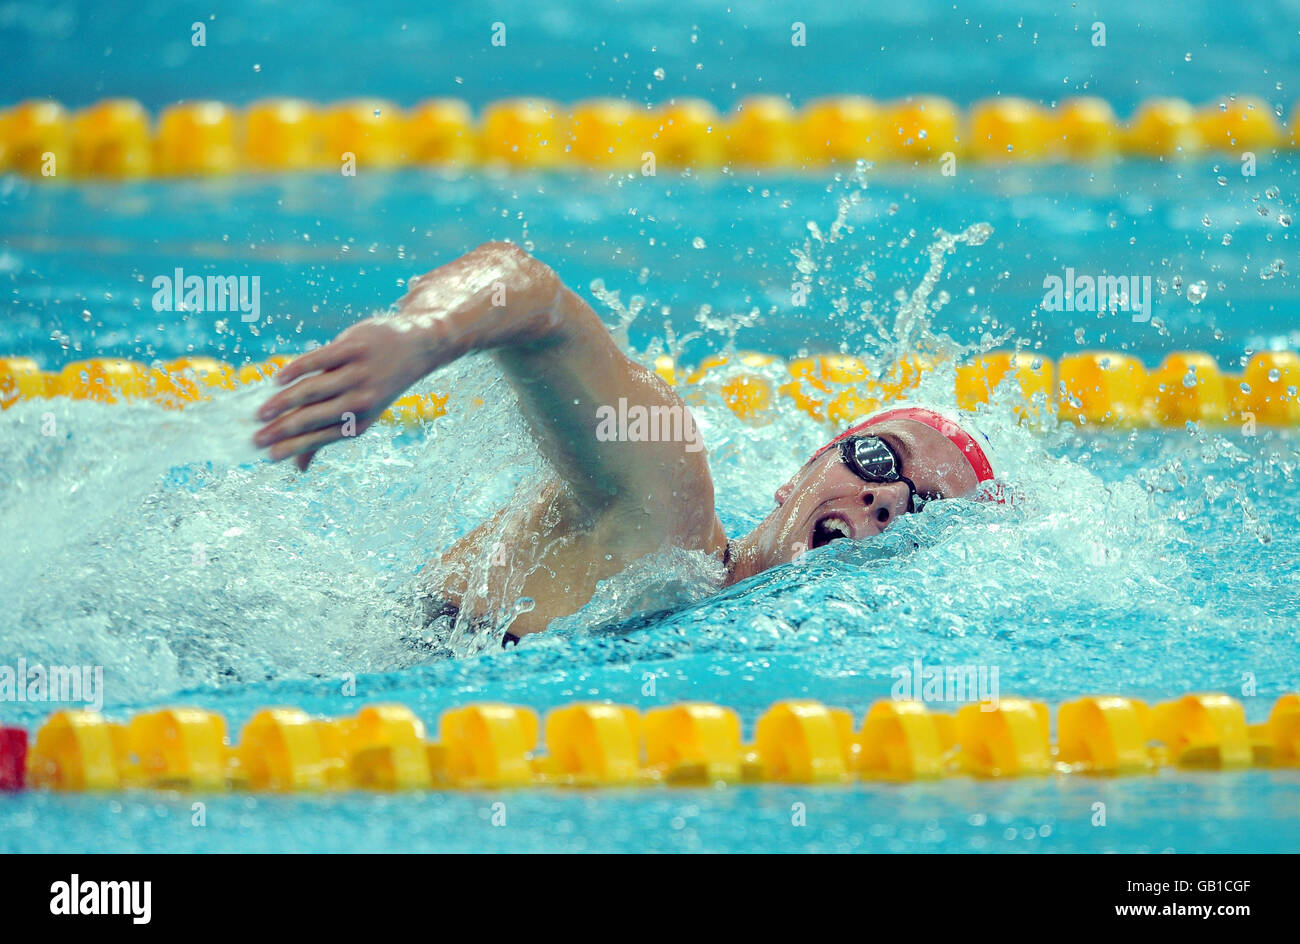 Thomas Haffield, en Grande-Bretagne, en action dans le Medley individuel de 400 m masculin au Centre aquatique national de Beijing, en Chine. Banque D'Images